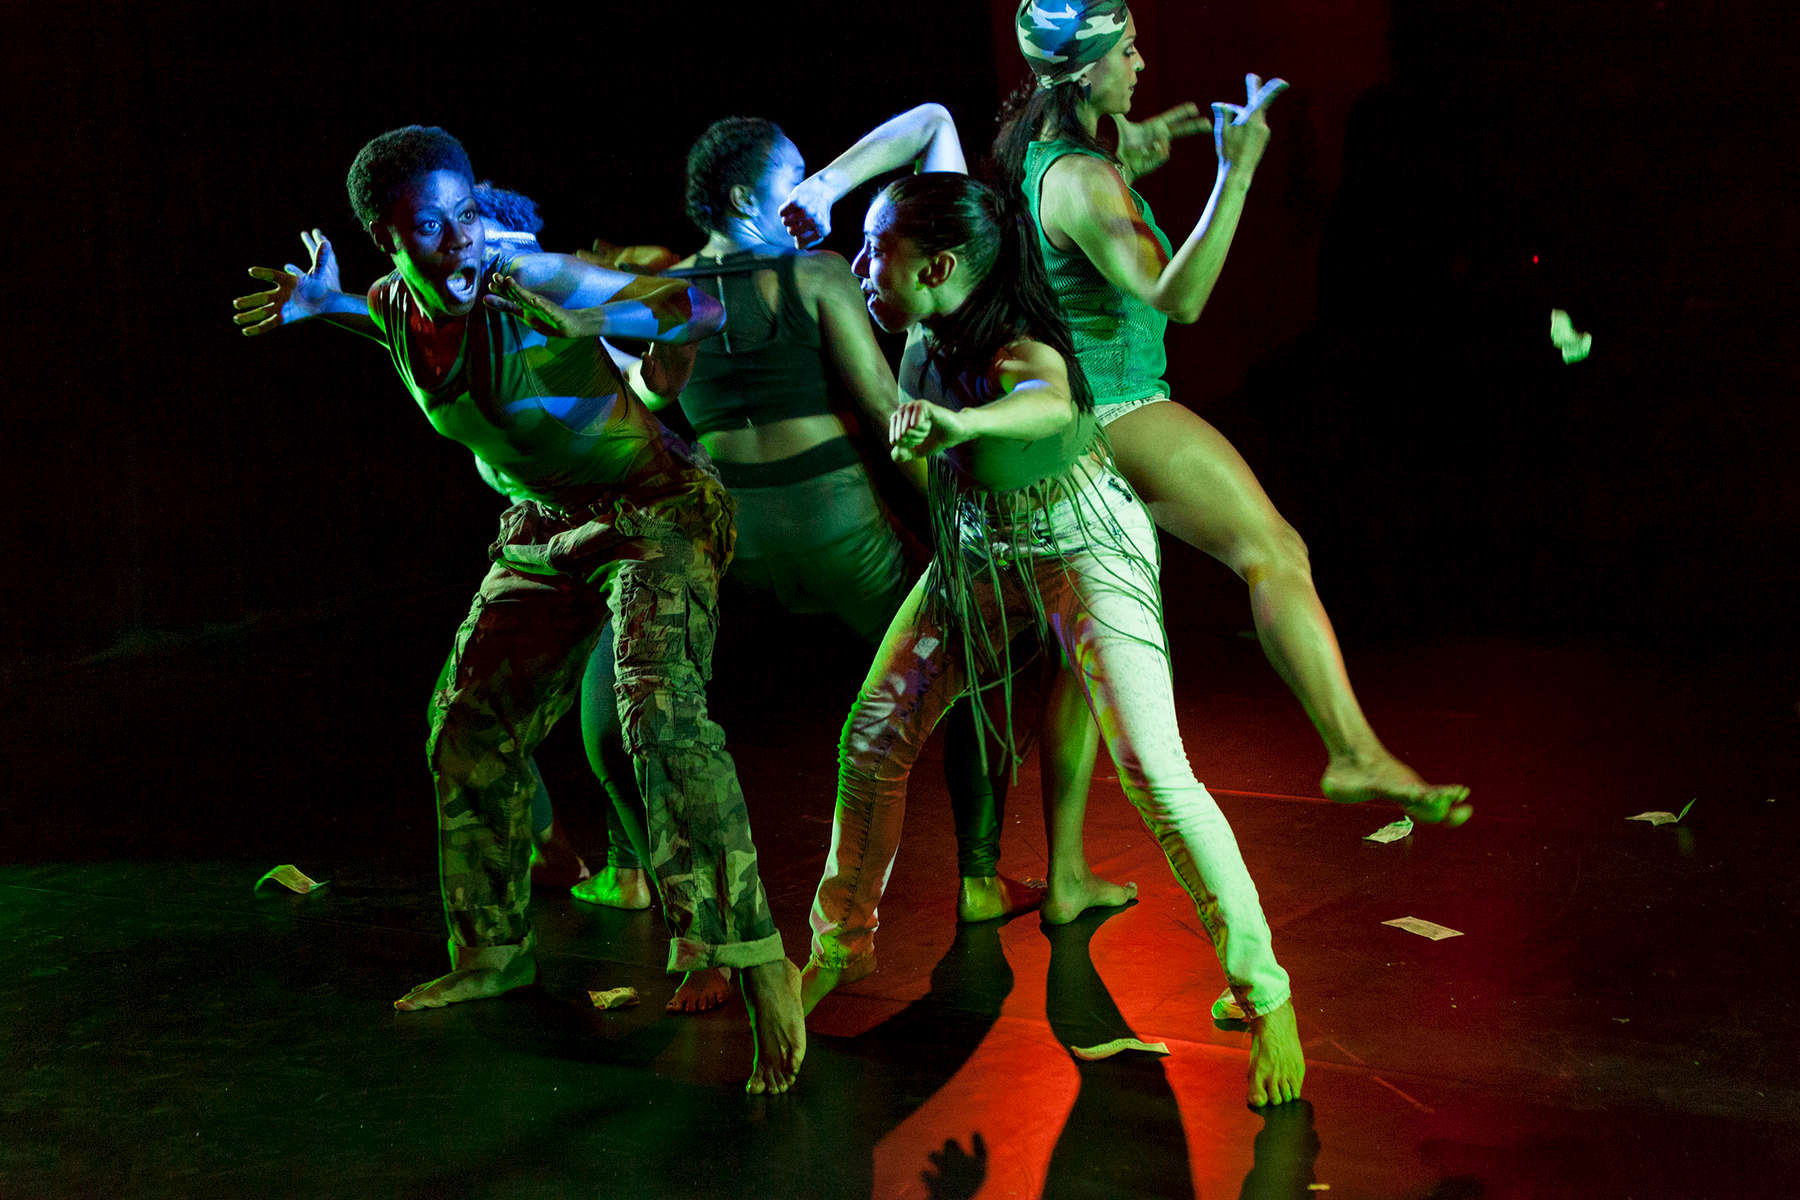 jacinta panuagua vlach - liberation dance